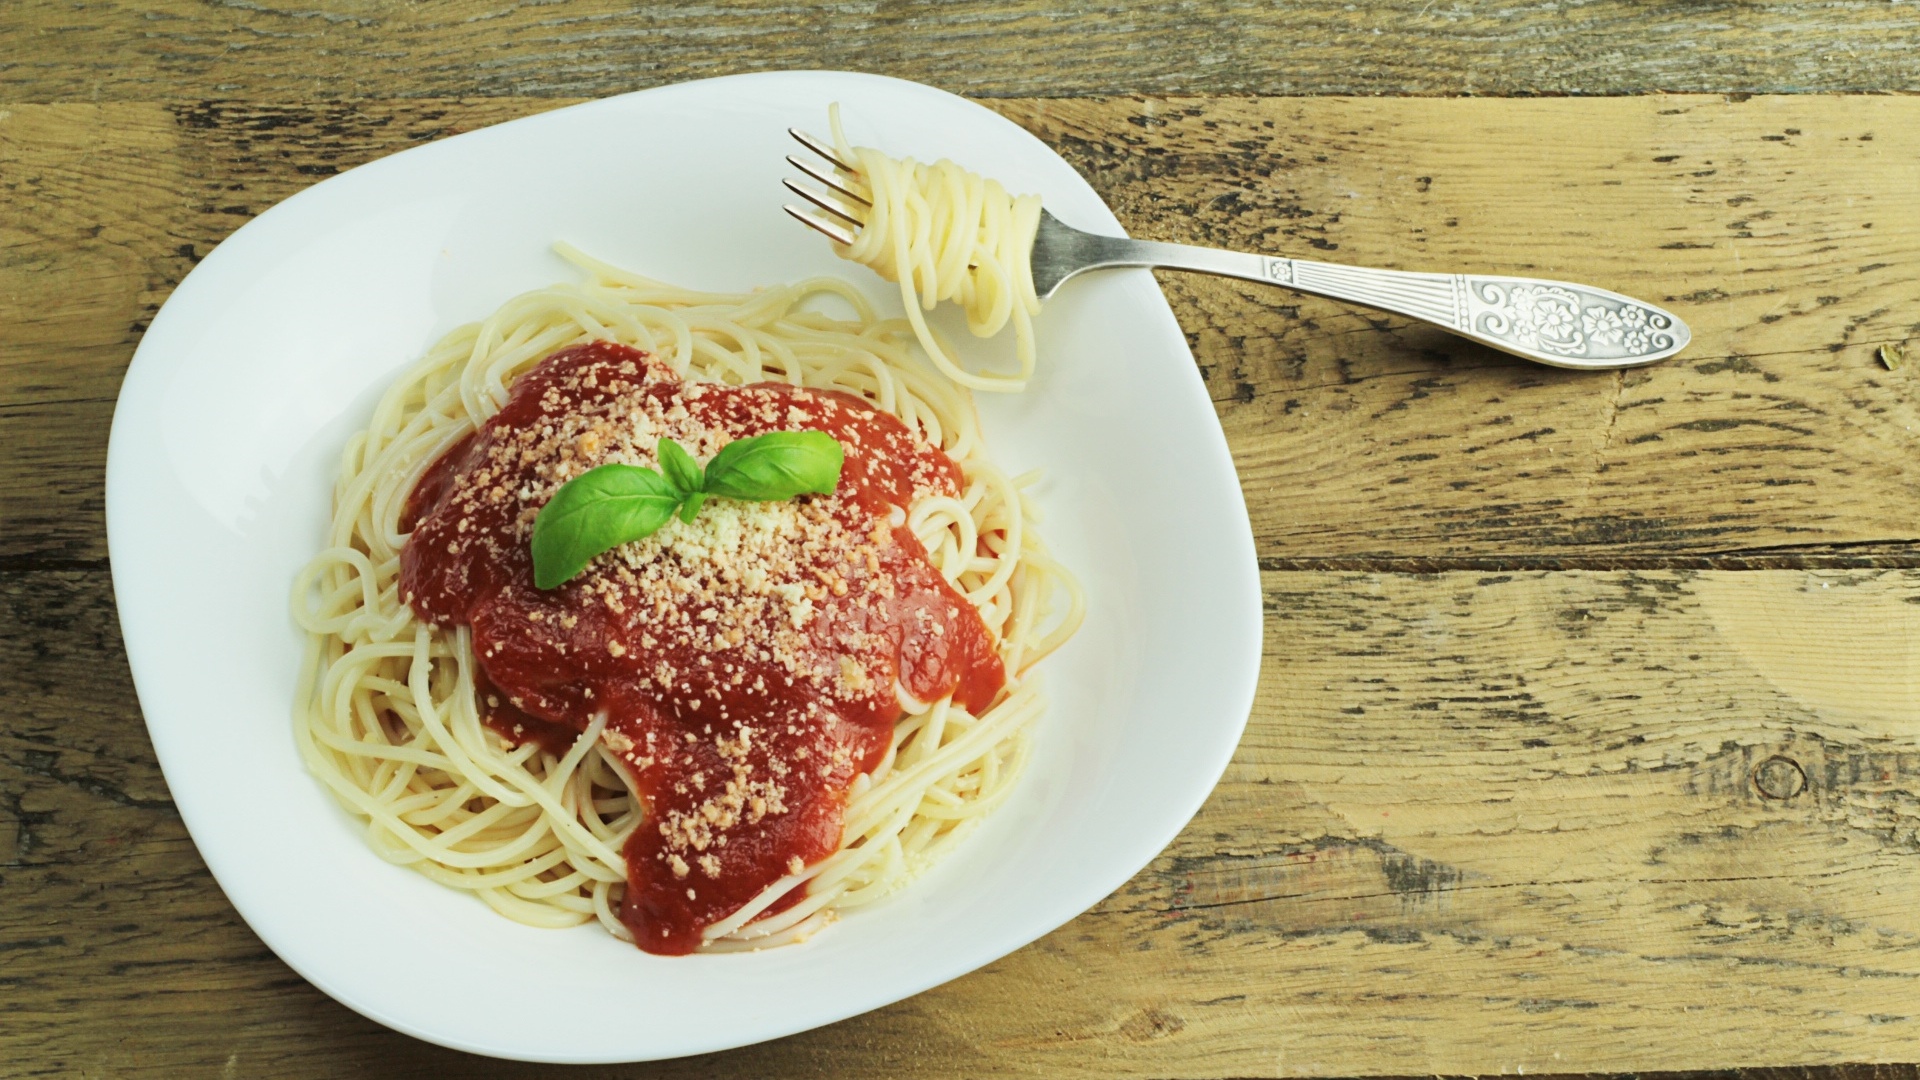 晚餐主食通常是意大利麵，配上一些色拉、水果或奶酪（圖片來源：Pixabay）